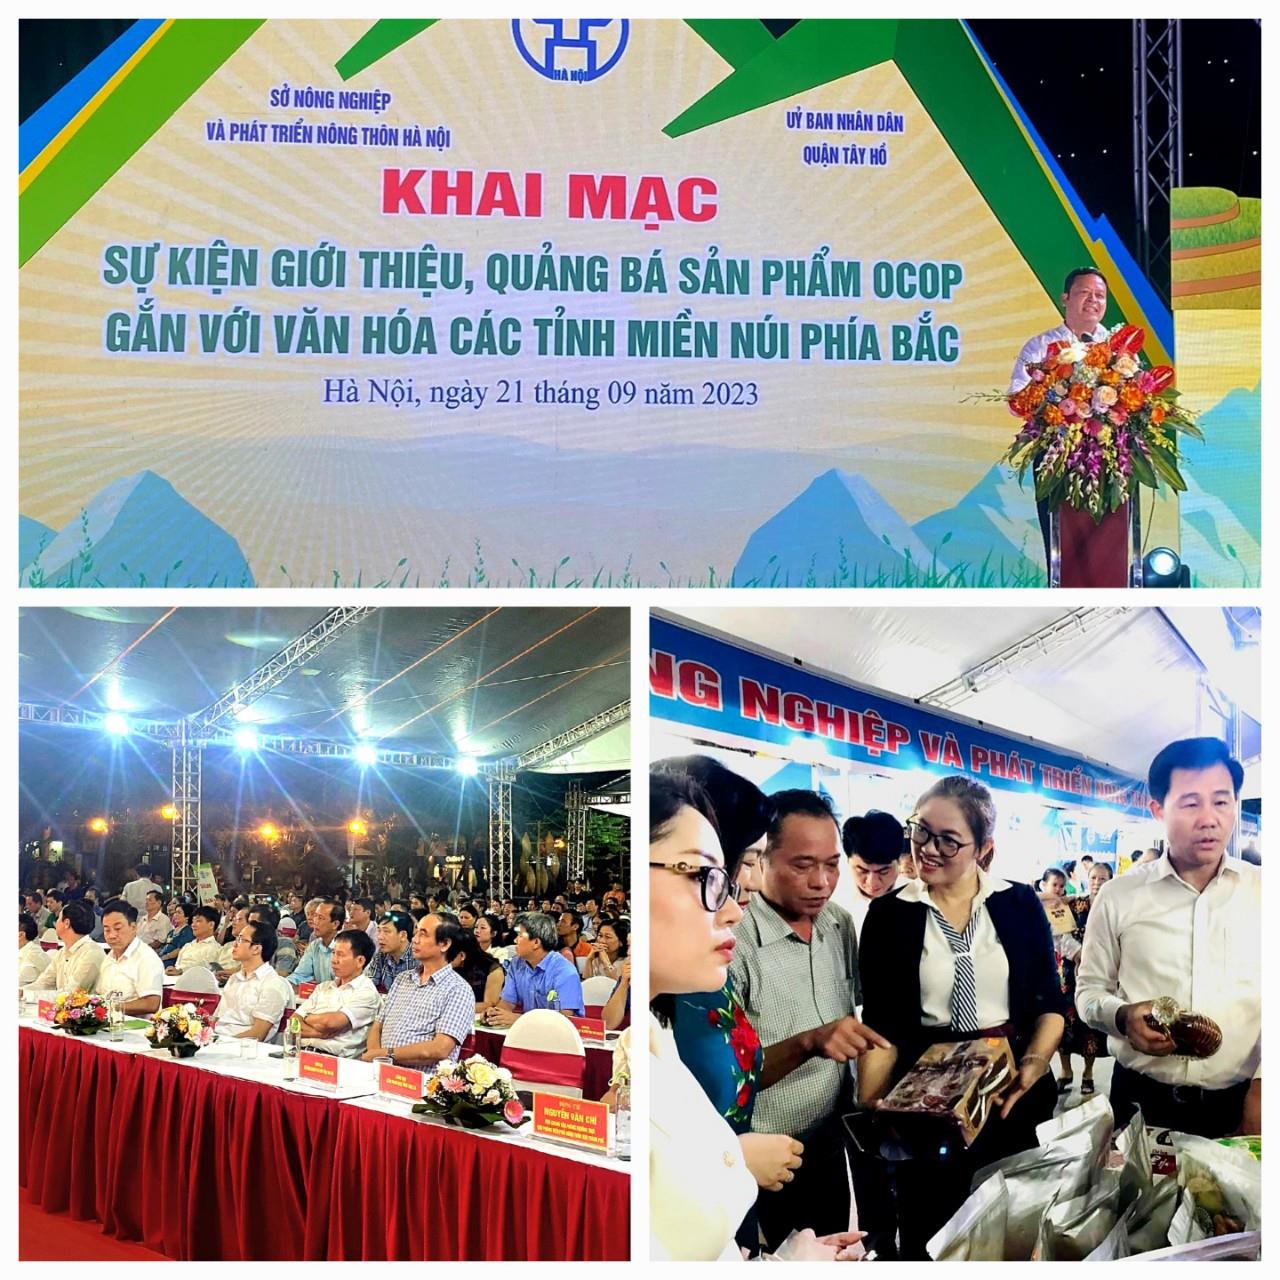 Trung tâm Khuyến công & XTTM tỉnh Bắc Giang tham gia“Sự kiện giới thiệu, quảng bá sản phẩm OCOP gắn với văn hóa các tỉnh miền núi phía Bắc”